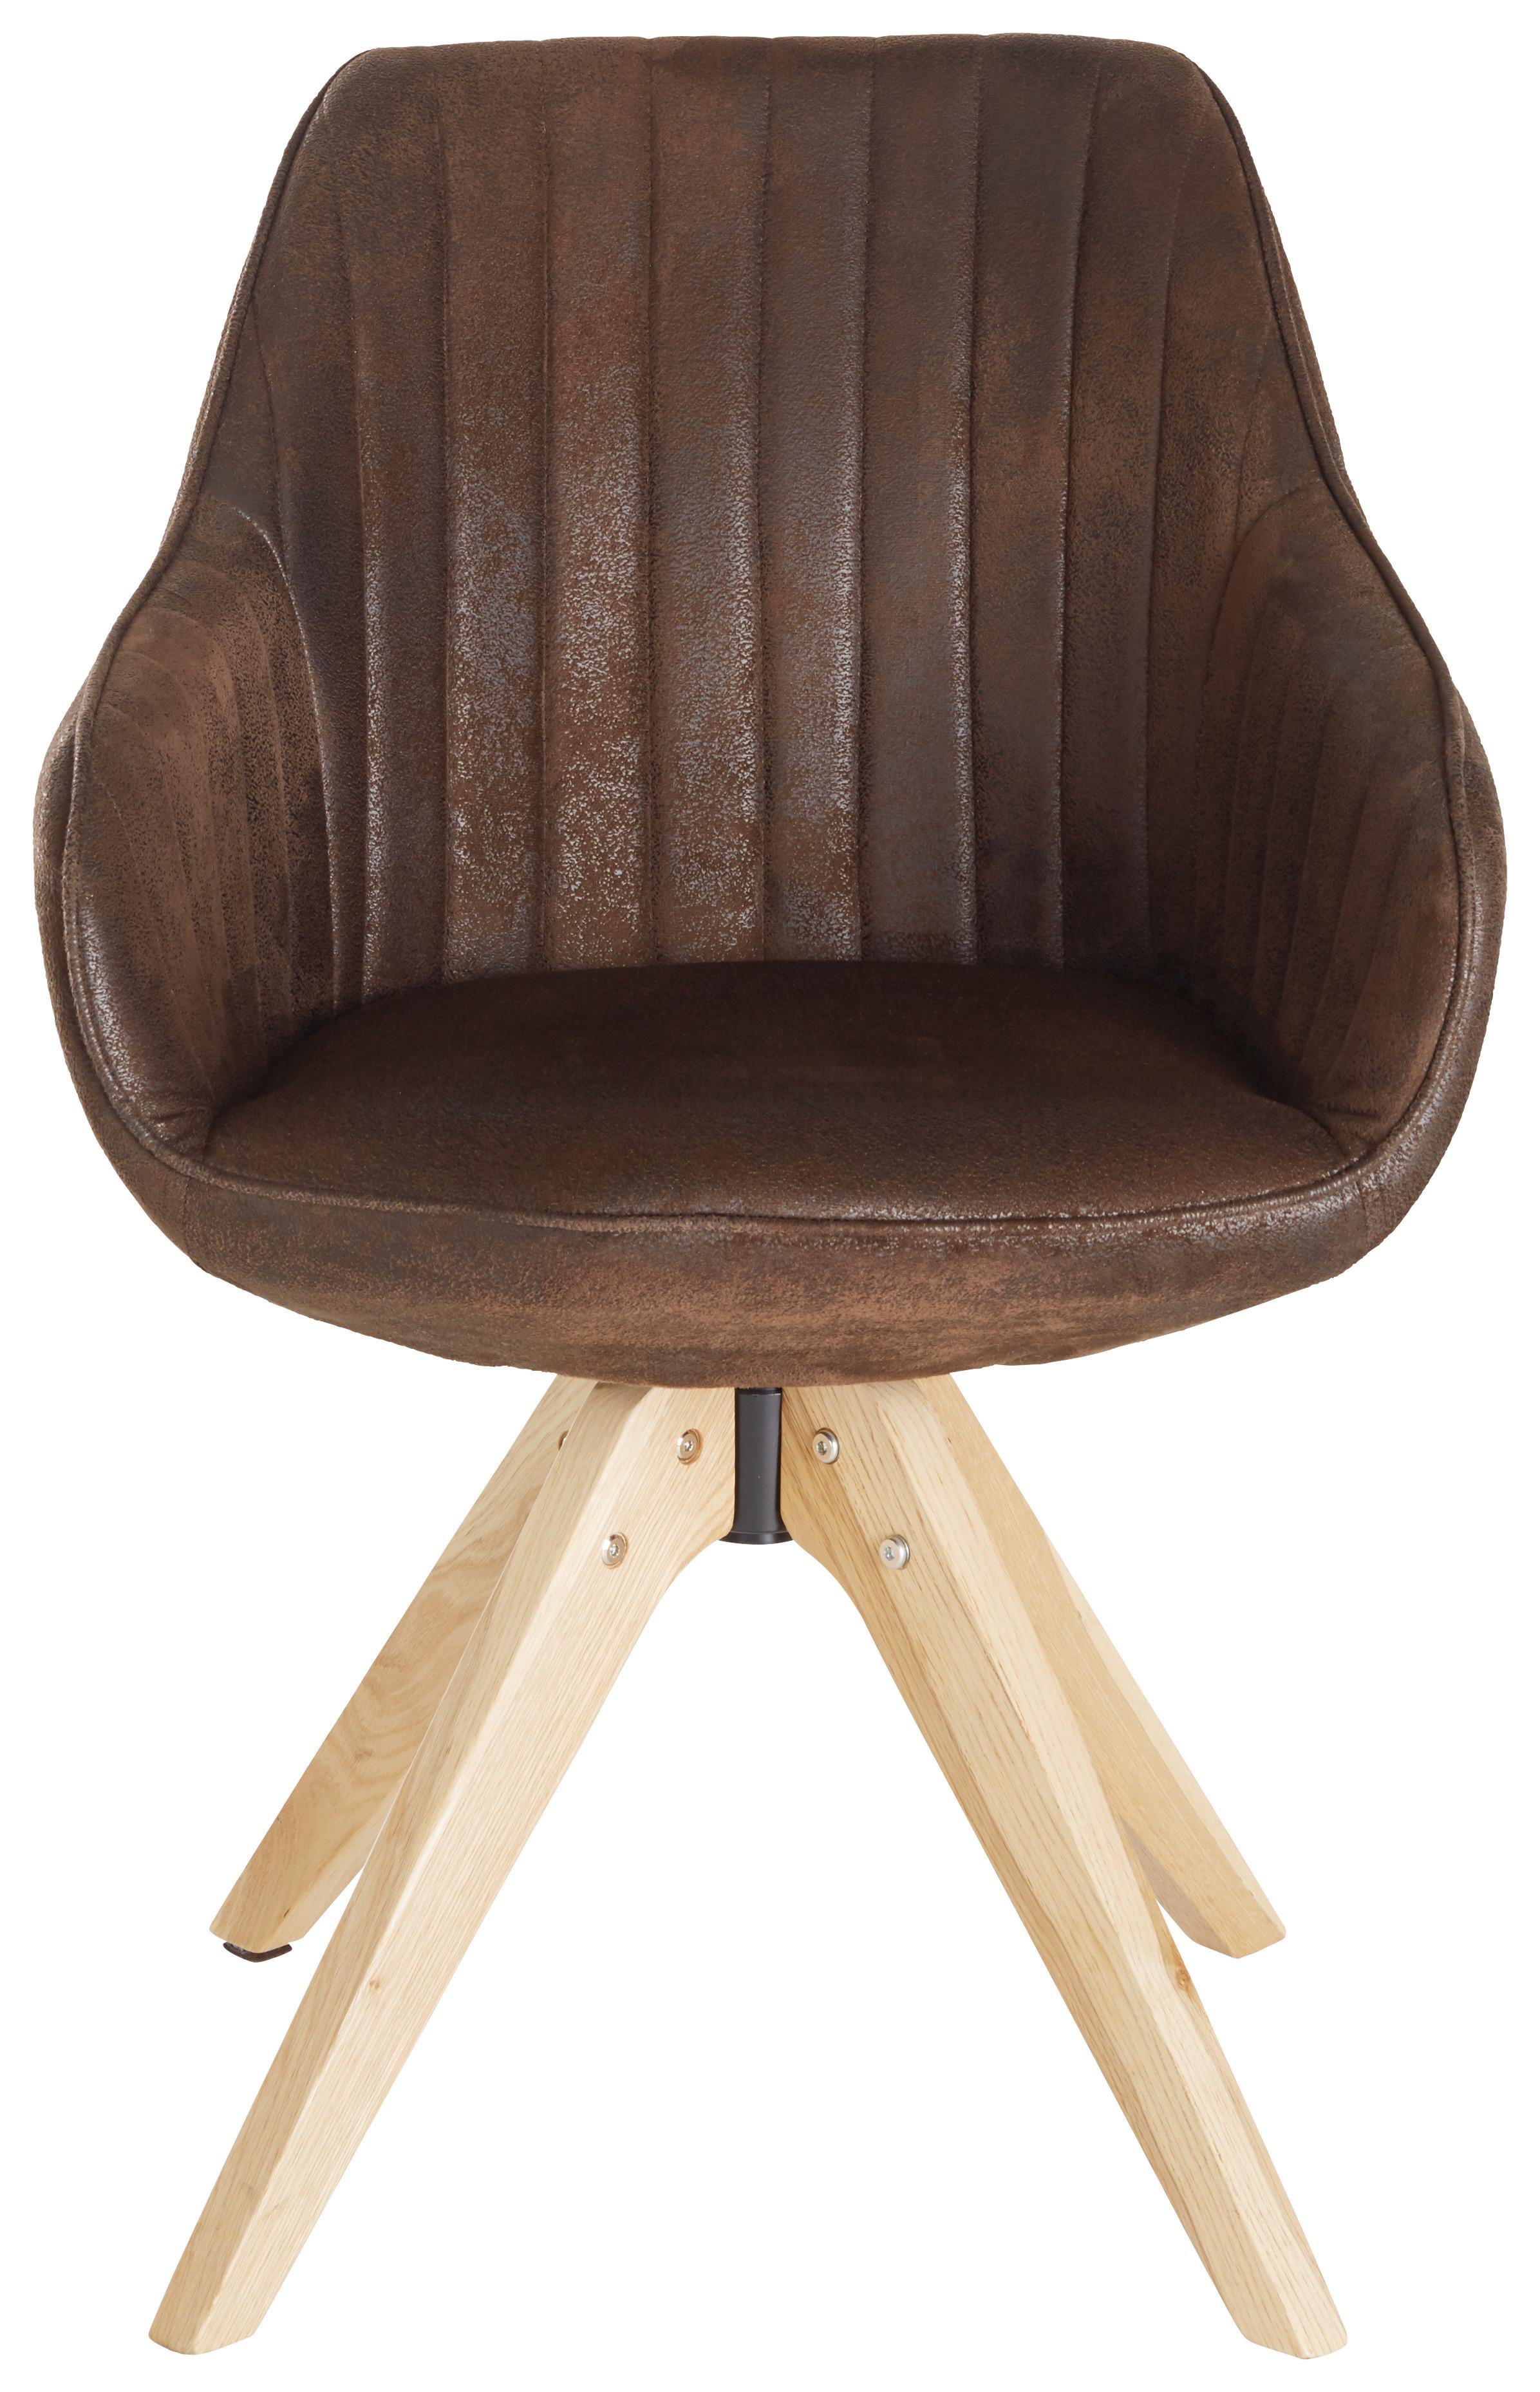 Stol Chill, Temno Rjava - barve hrasta/temno rjava, tekstil/les (60/83/65cm) - Premium Living